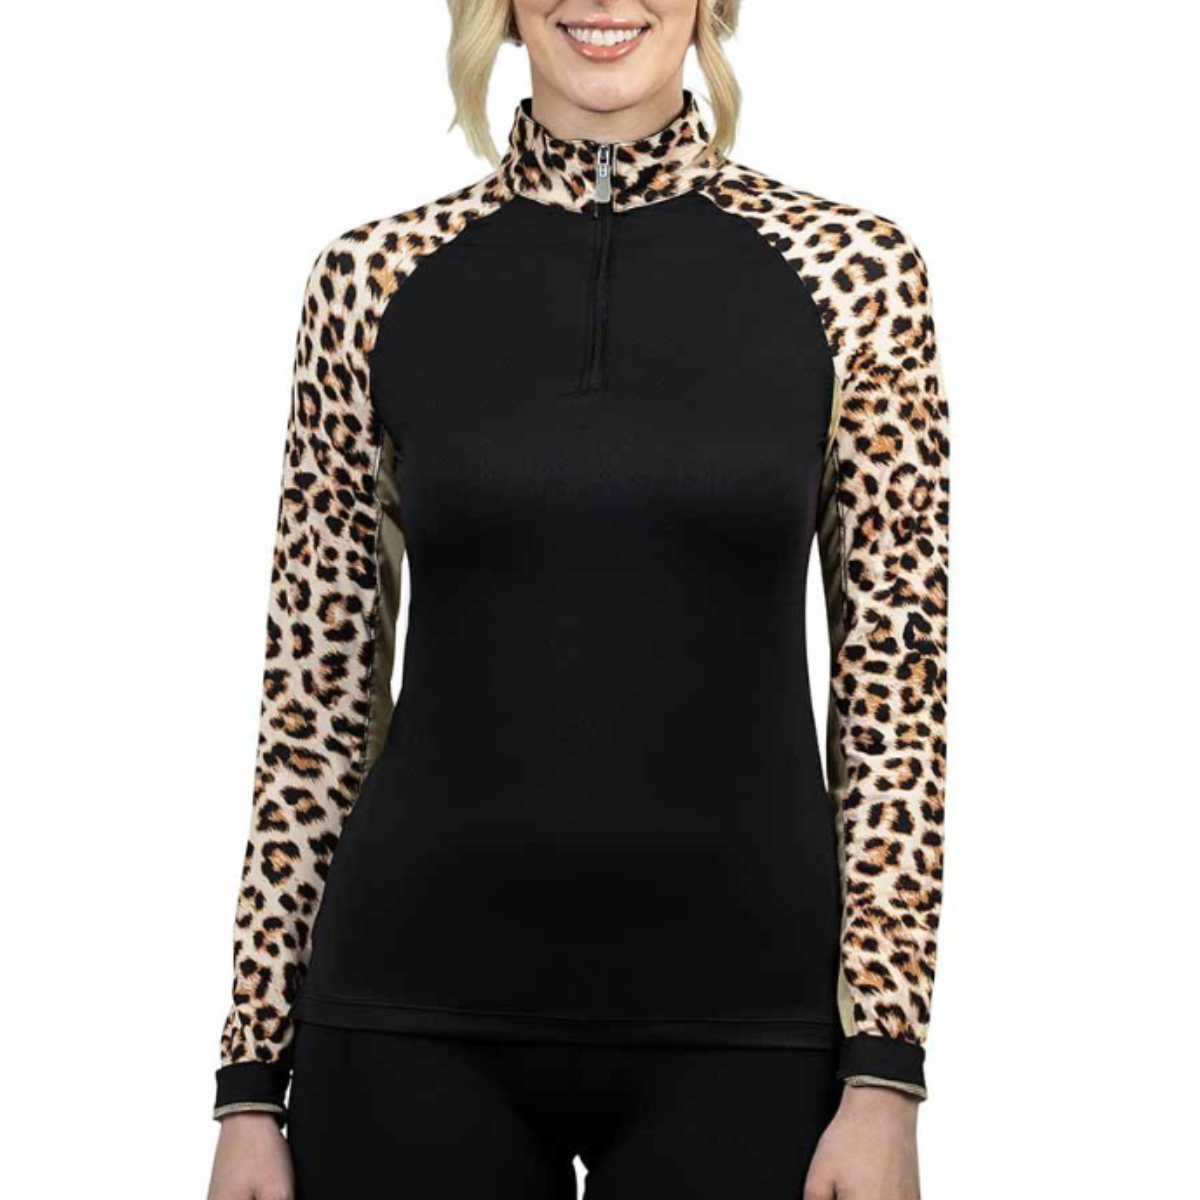 Kastel Long Sleeve 1/4 Zip Raglan Shirt in Animal Print/Black